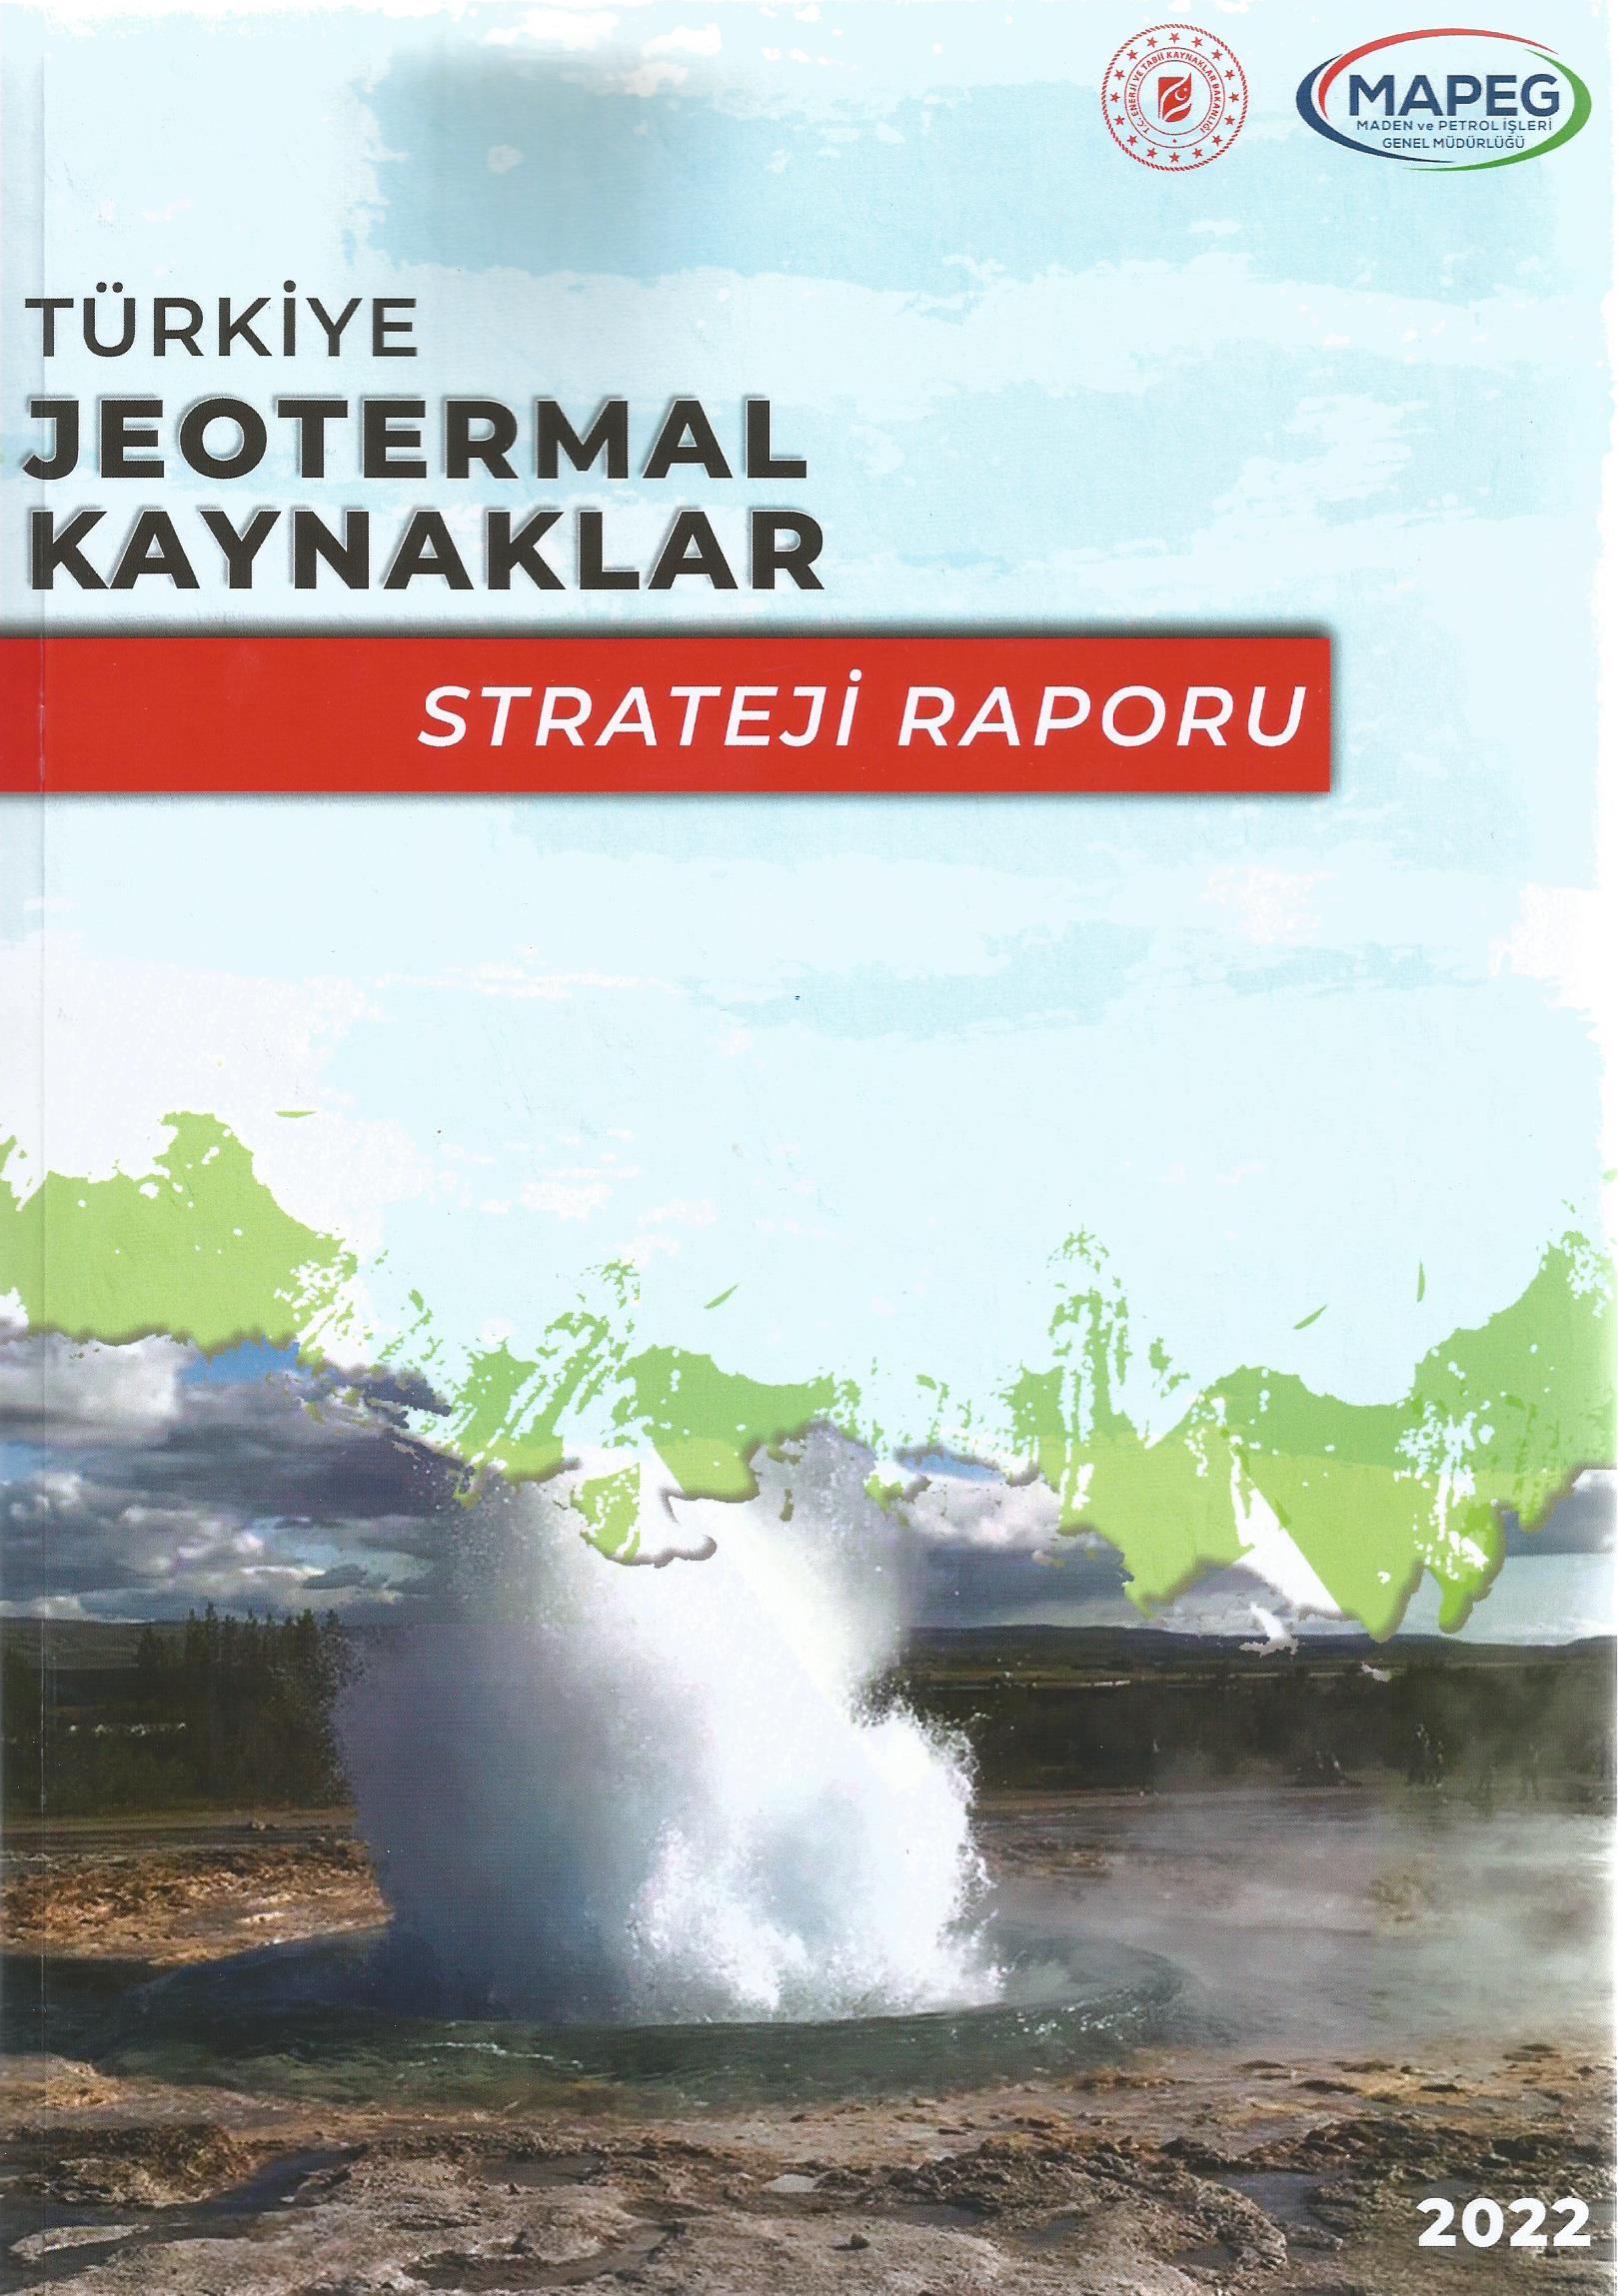 Türkiye Jeotermal Kaynaklar Strateji Raporu yayınlandı